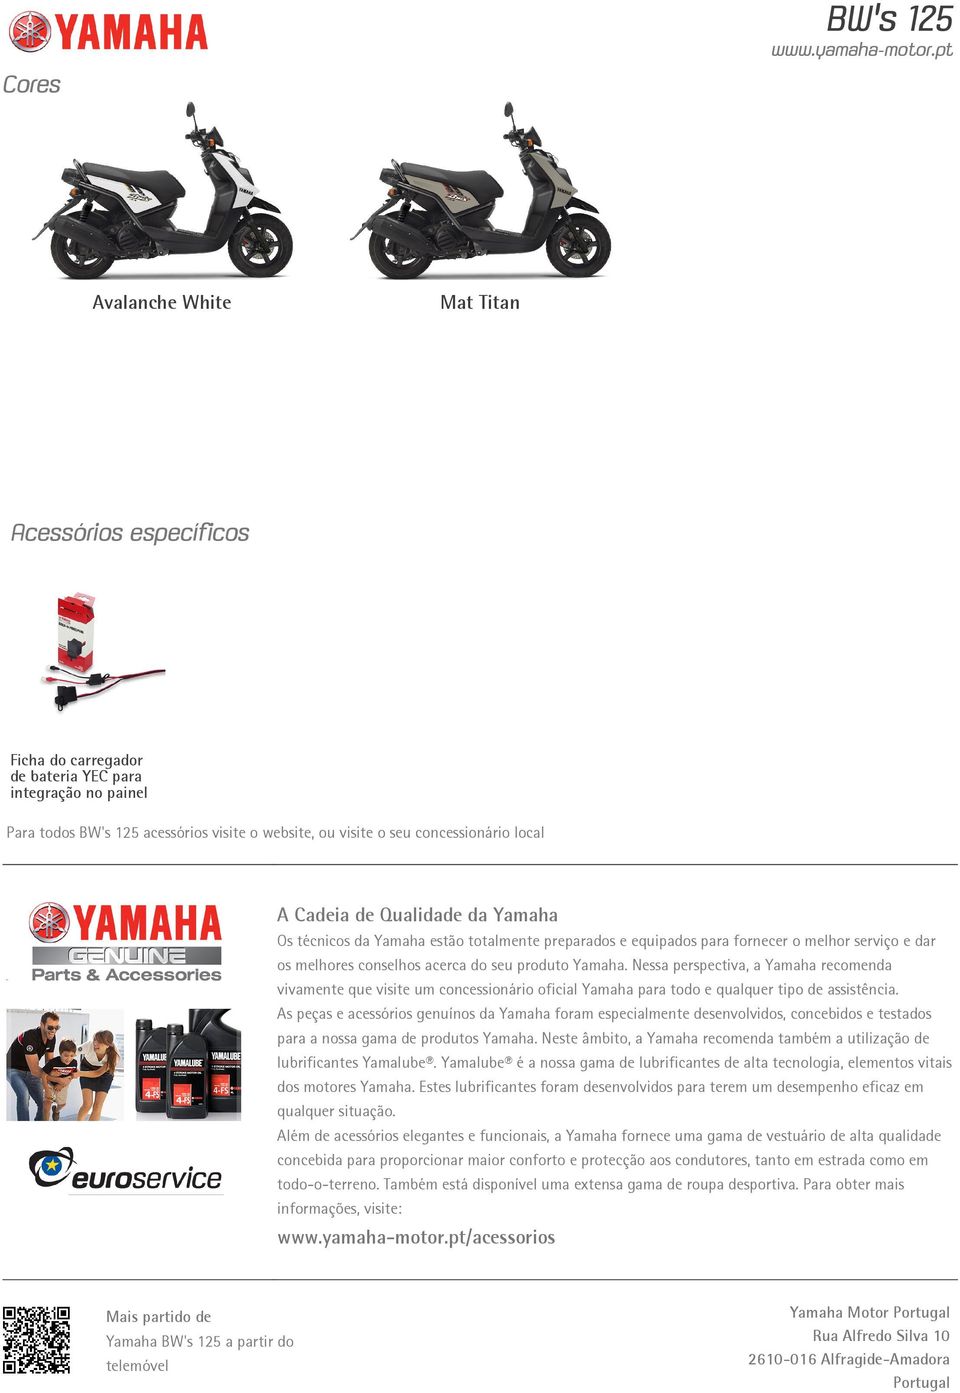 Yamaha. Nessa perspectiva, a Yamaha recomenda vivamente que visite um concessionário oficial Yamaha para todo e qualquer tipo de assistência.